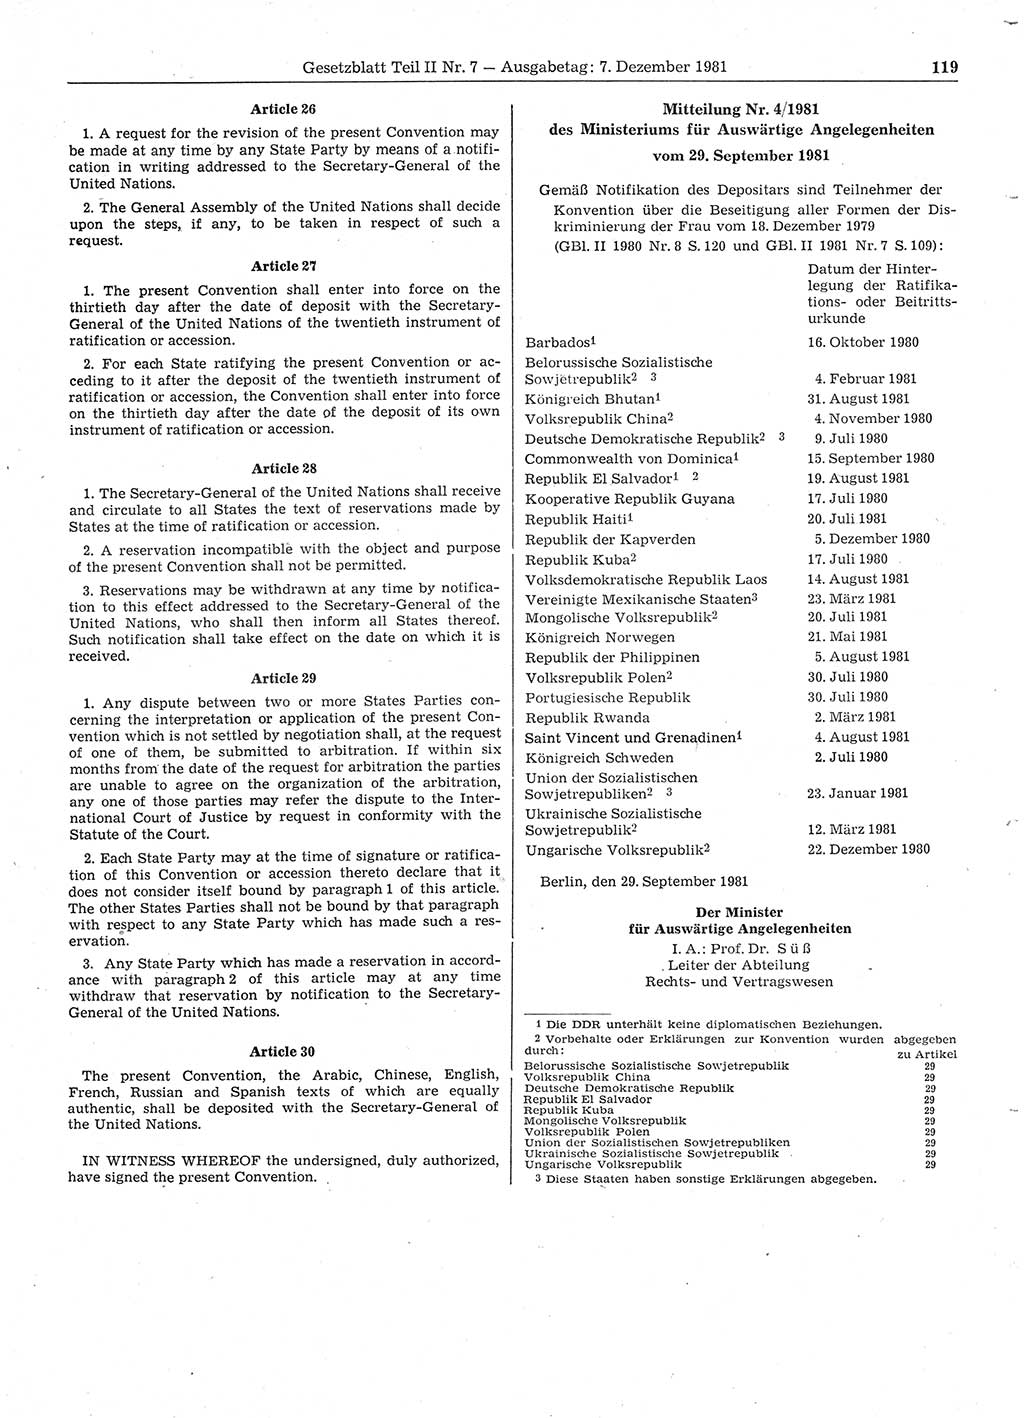 Gesetzblatt (GBl.) der Deutschen Demokratischen Republik (DDR) Teil ⅠⅠ 1981, Seite 119 (GBl. DDR ⅠⅠ 1981, S. 119)